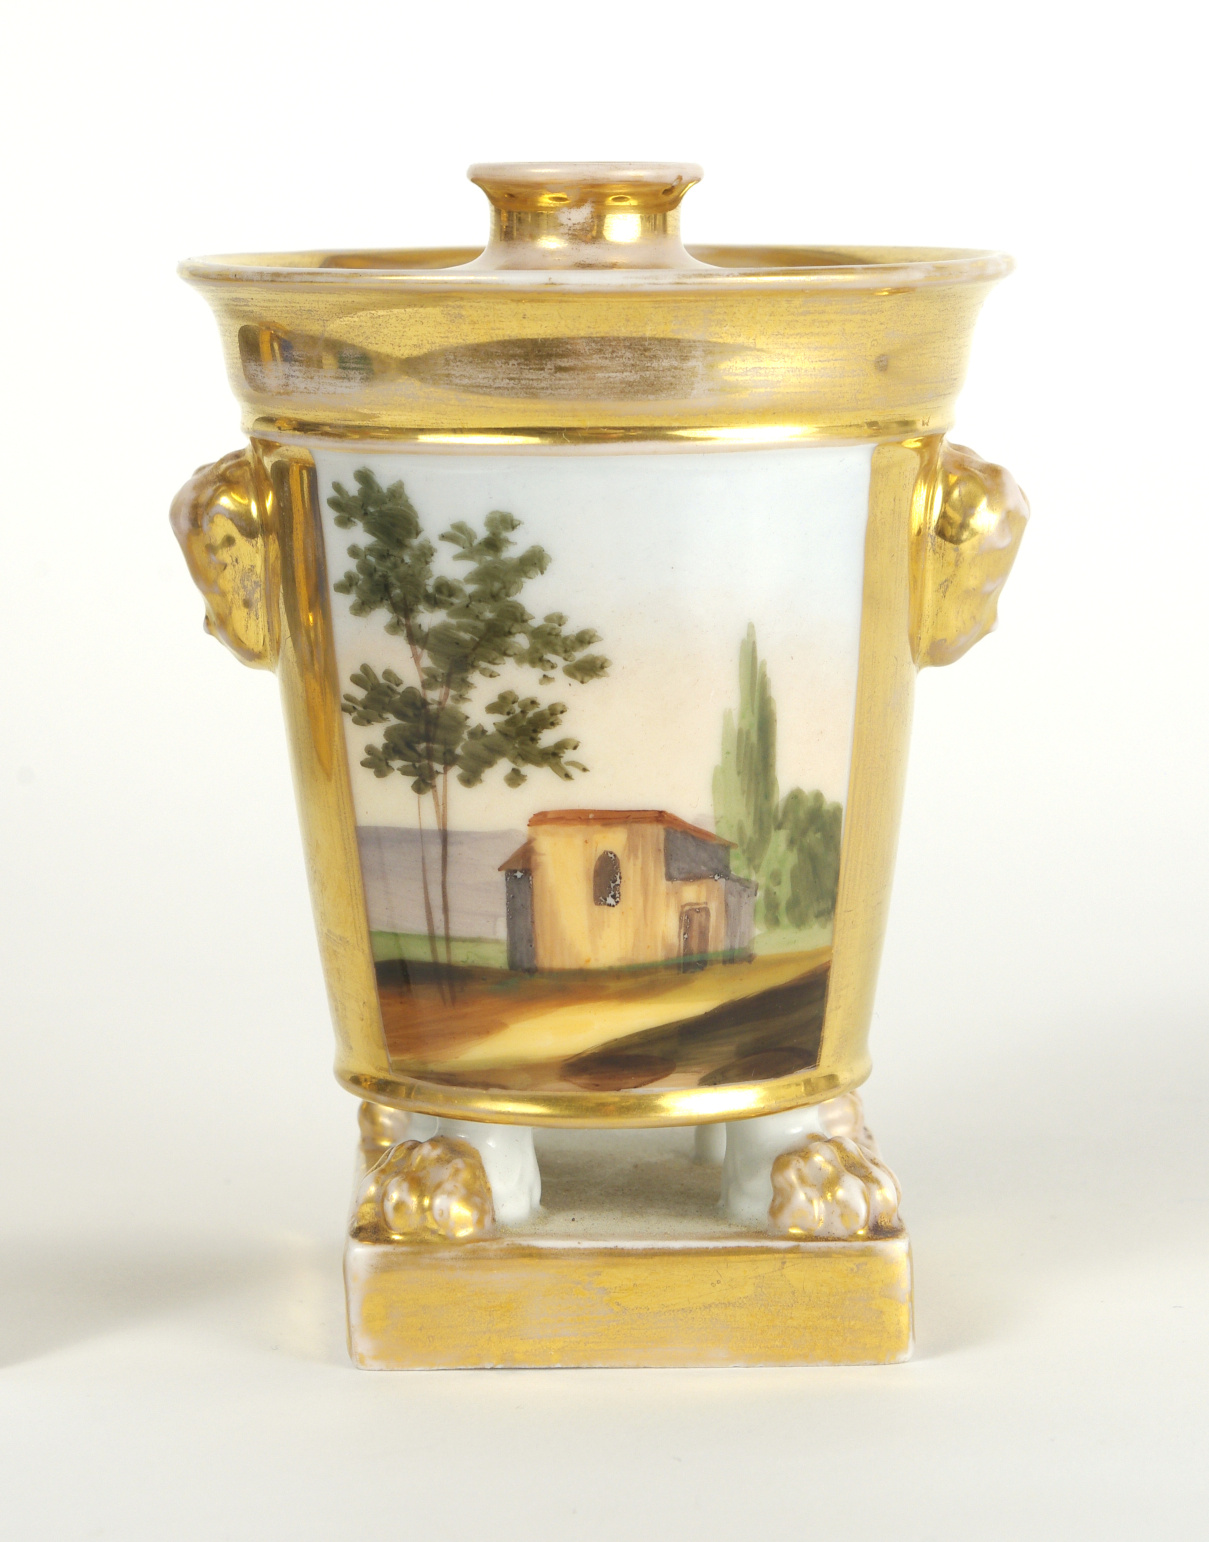 Pair of Old Paris Potpourri Vases, c. 1820-30